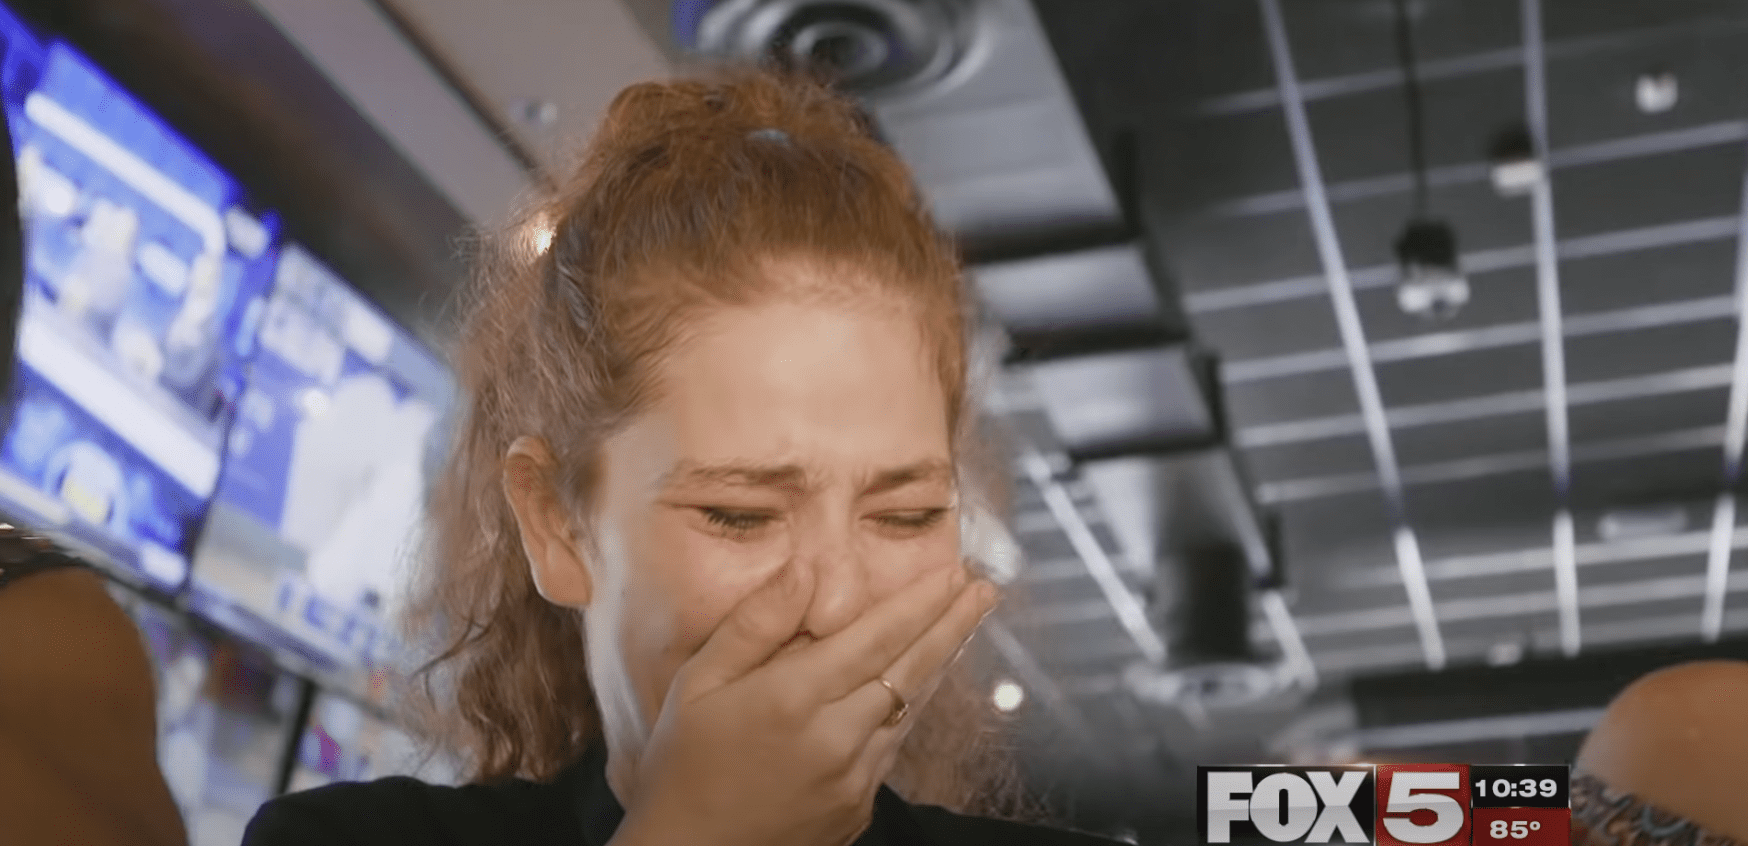 Jessica mit Tränen in den Augen. | Quelle: YouTube.com/FOX5 Las Vegas